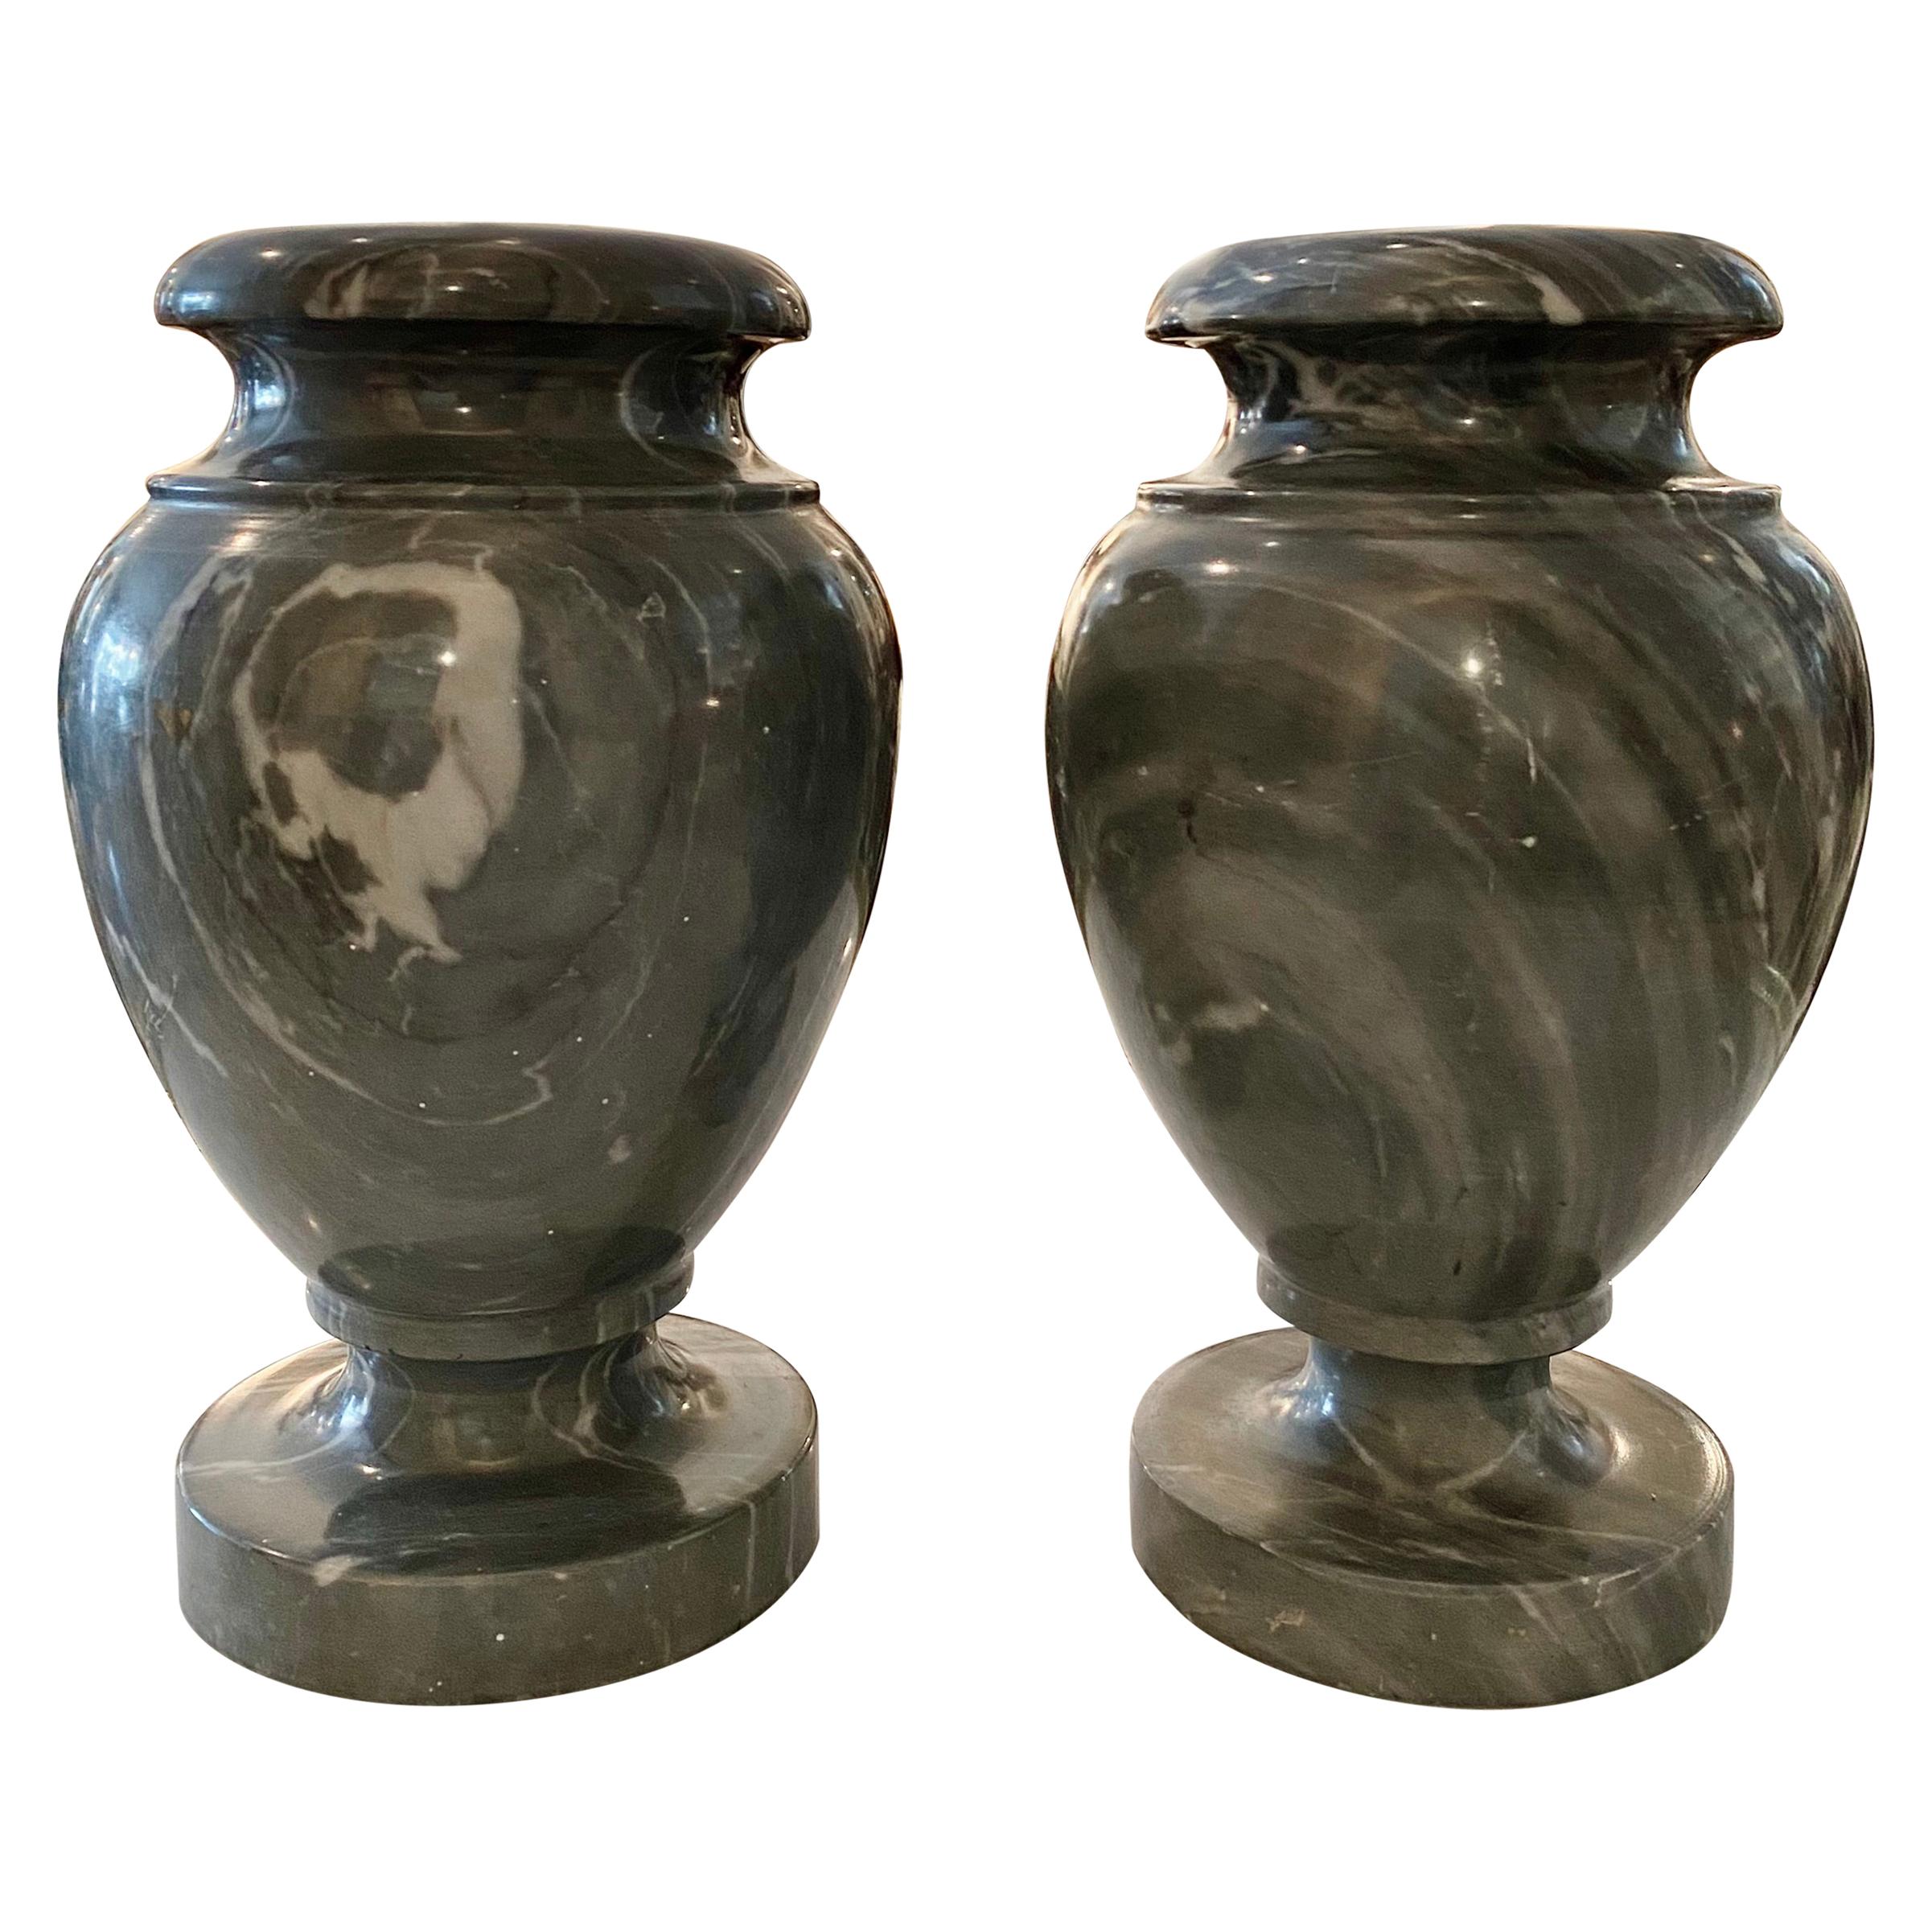 Paar neoklassizistische Urnen aus grauem Marmor im neoklassischen Stil